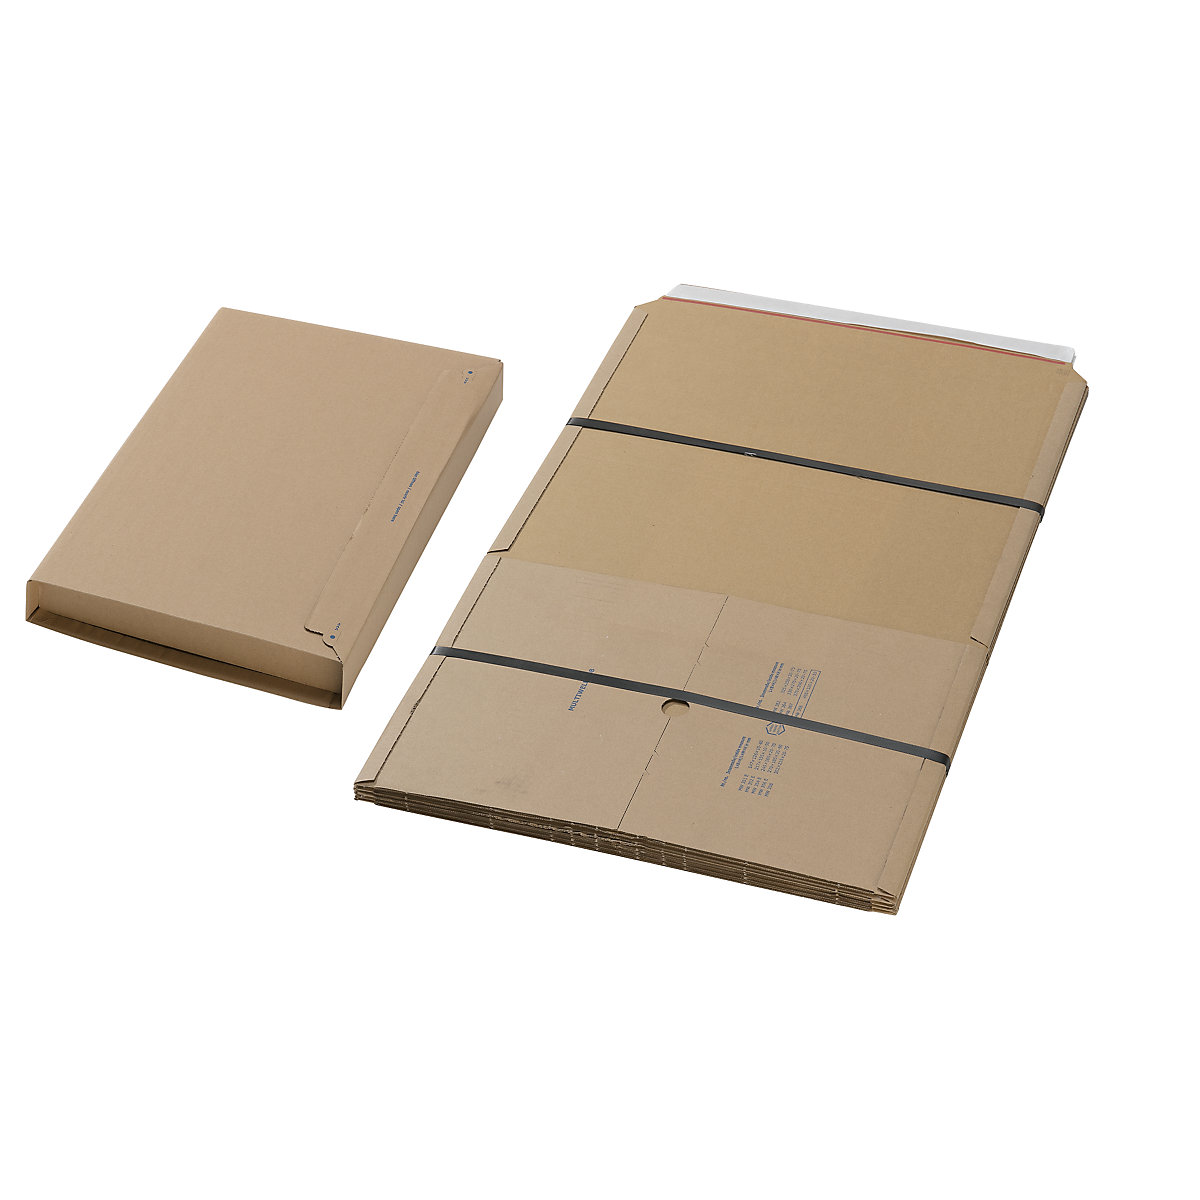 Univerzálny obal a obal na knihy – eurokraft basic, OJ 50 ks, vnútorné rozmery d x š 455 x 320 mm-1